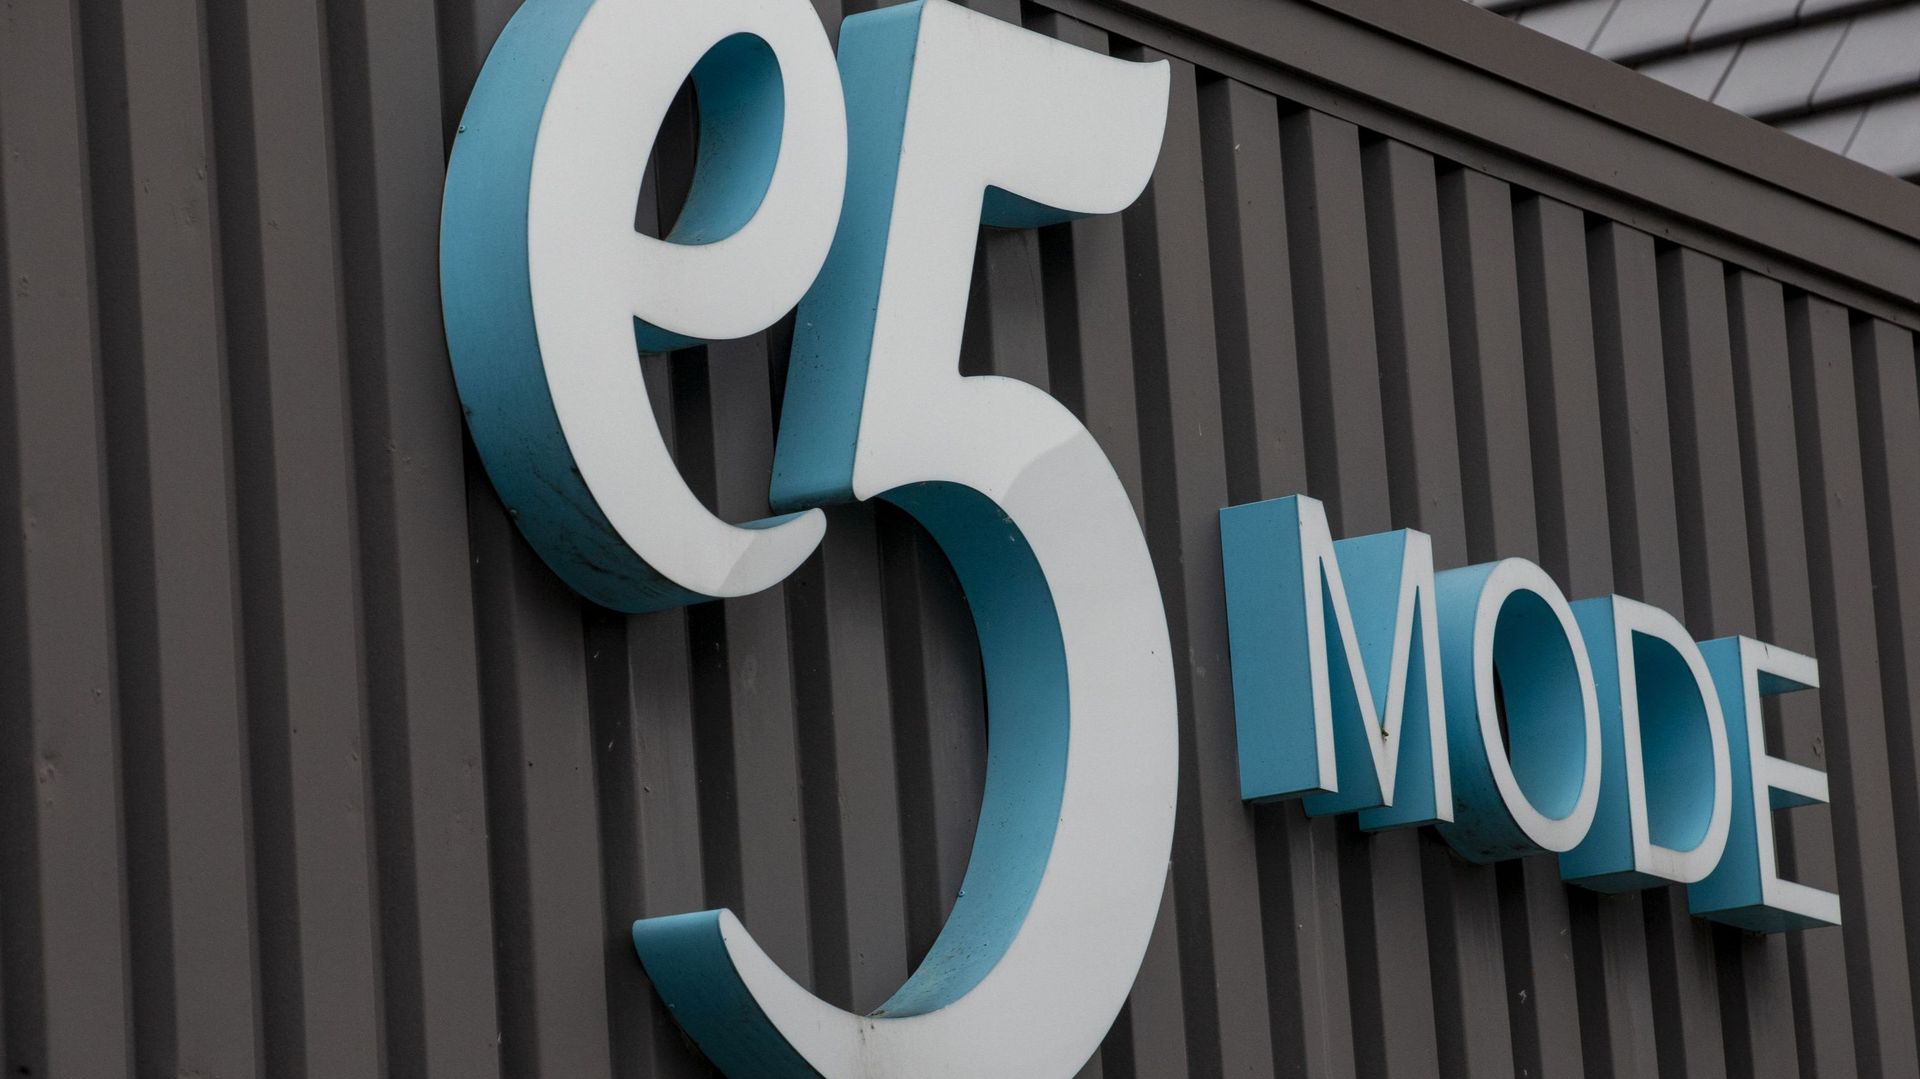 La famille De Sutter choisie par le tribunal de l’entreprise comme repreneur de la chaîne E5 Mode